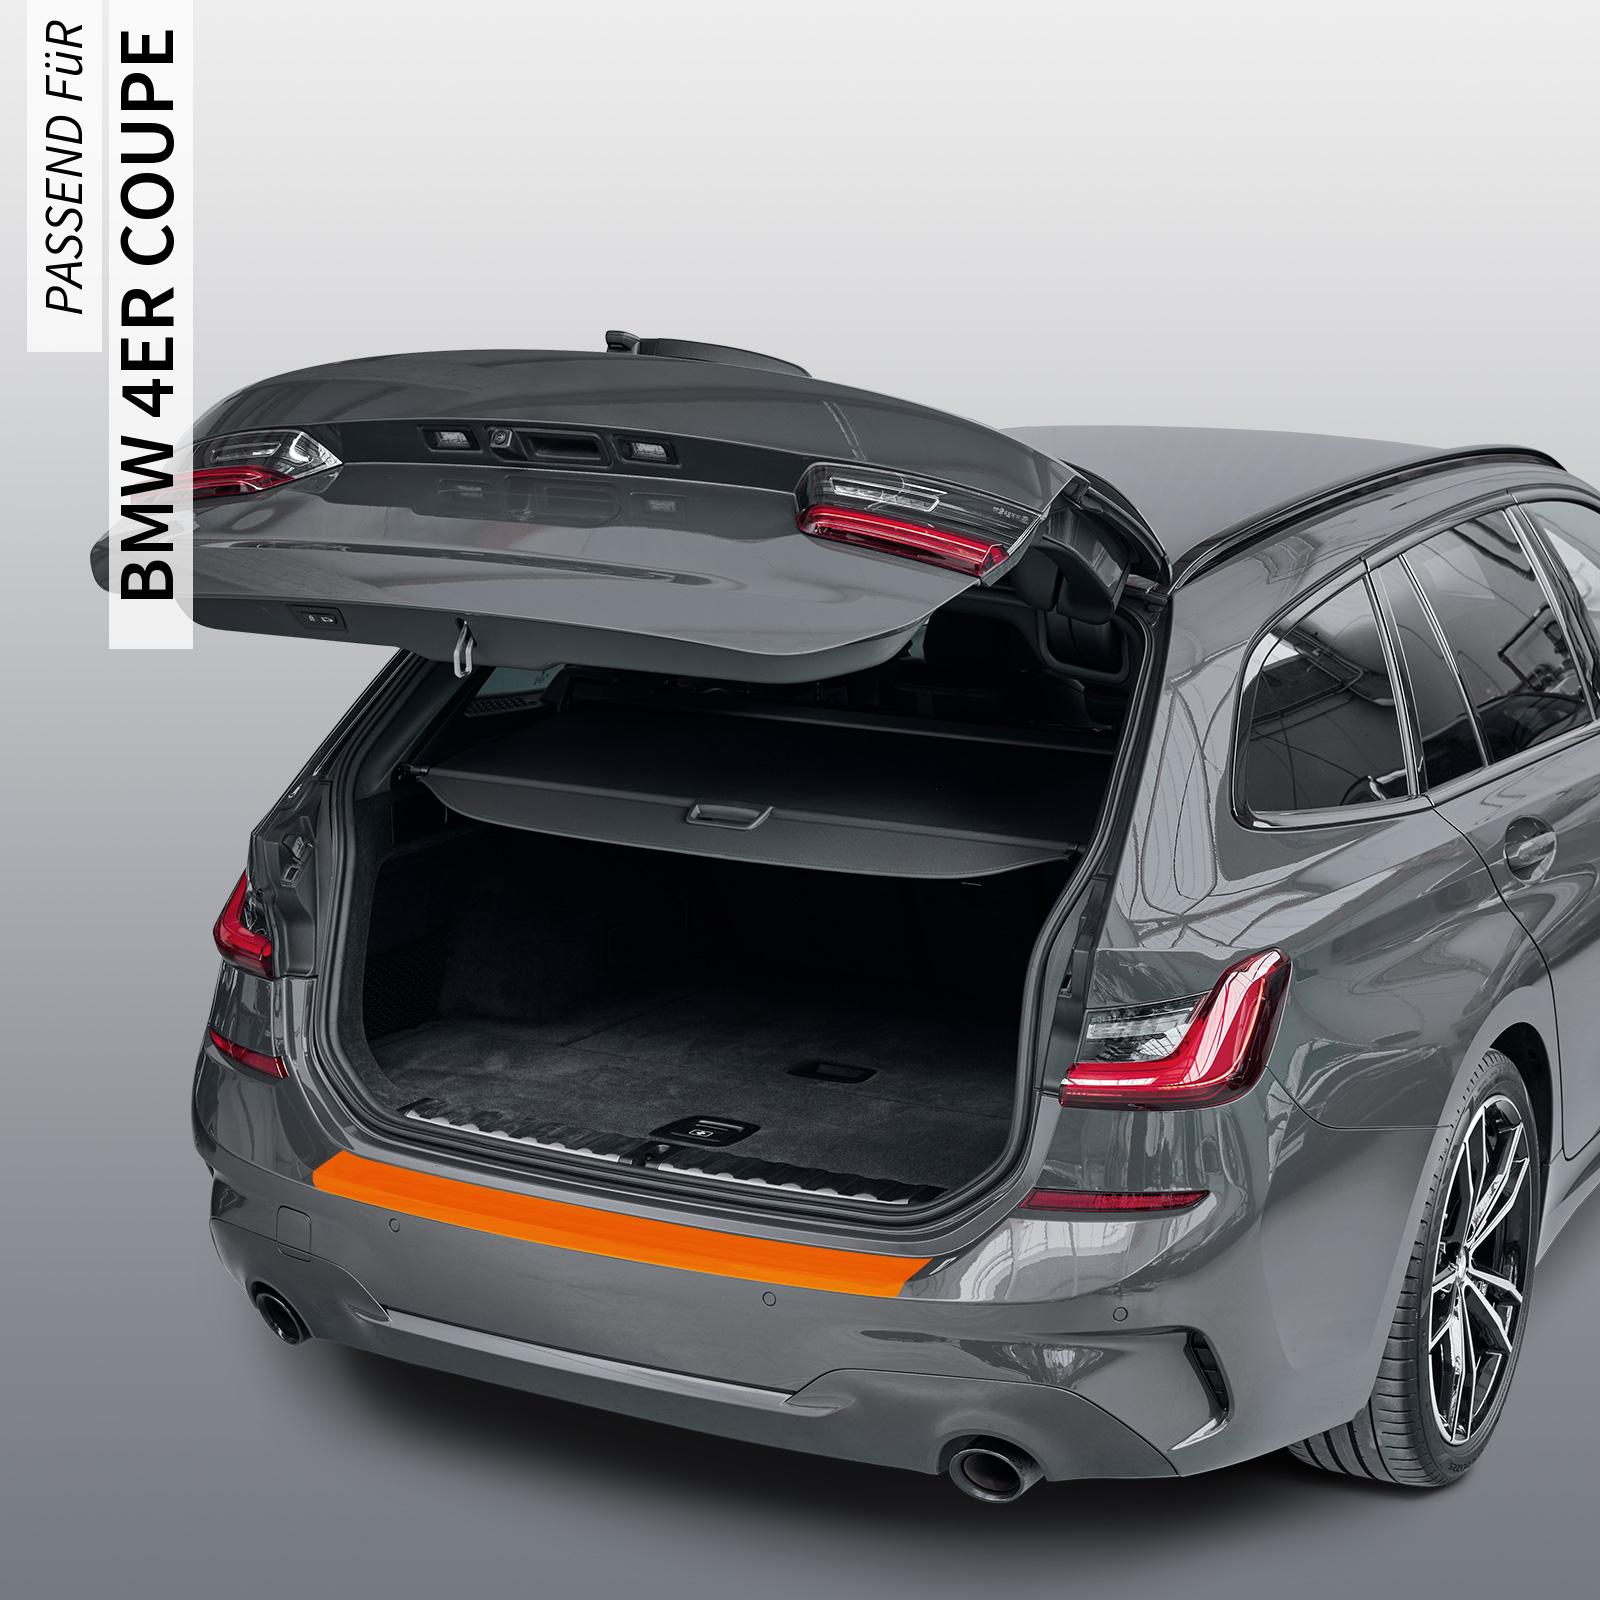 Ladekantenschutzfolie - Transparent Glatt Hochglänzend 150 µm stark für BMW 4er Coupe Typ F32, BJ 2013-2020